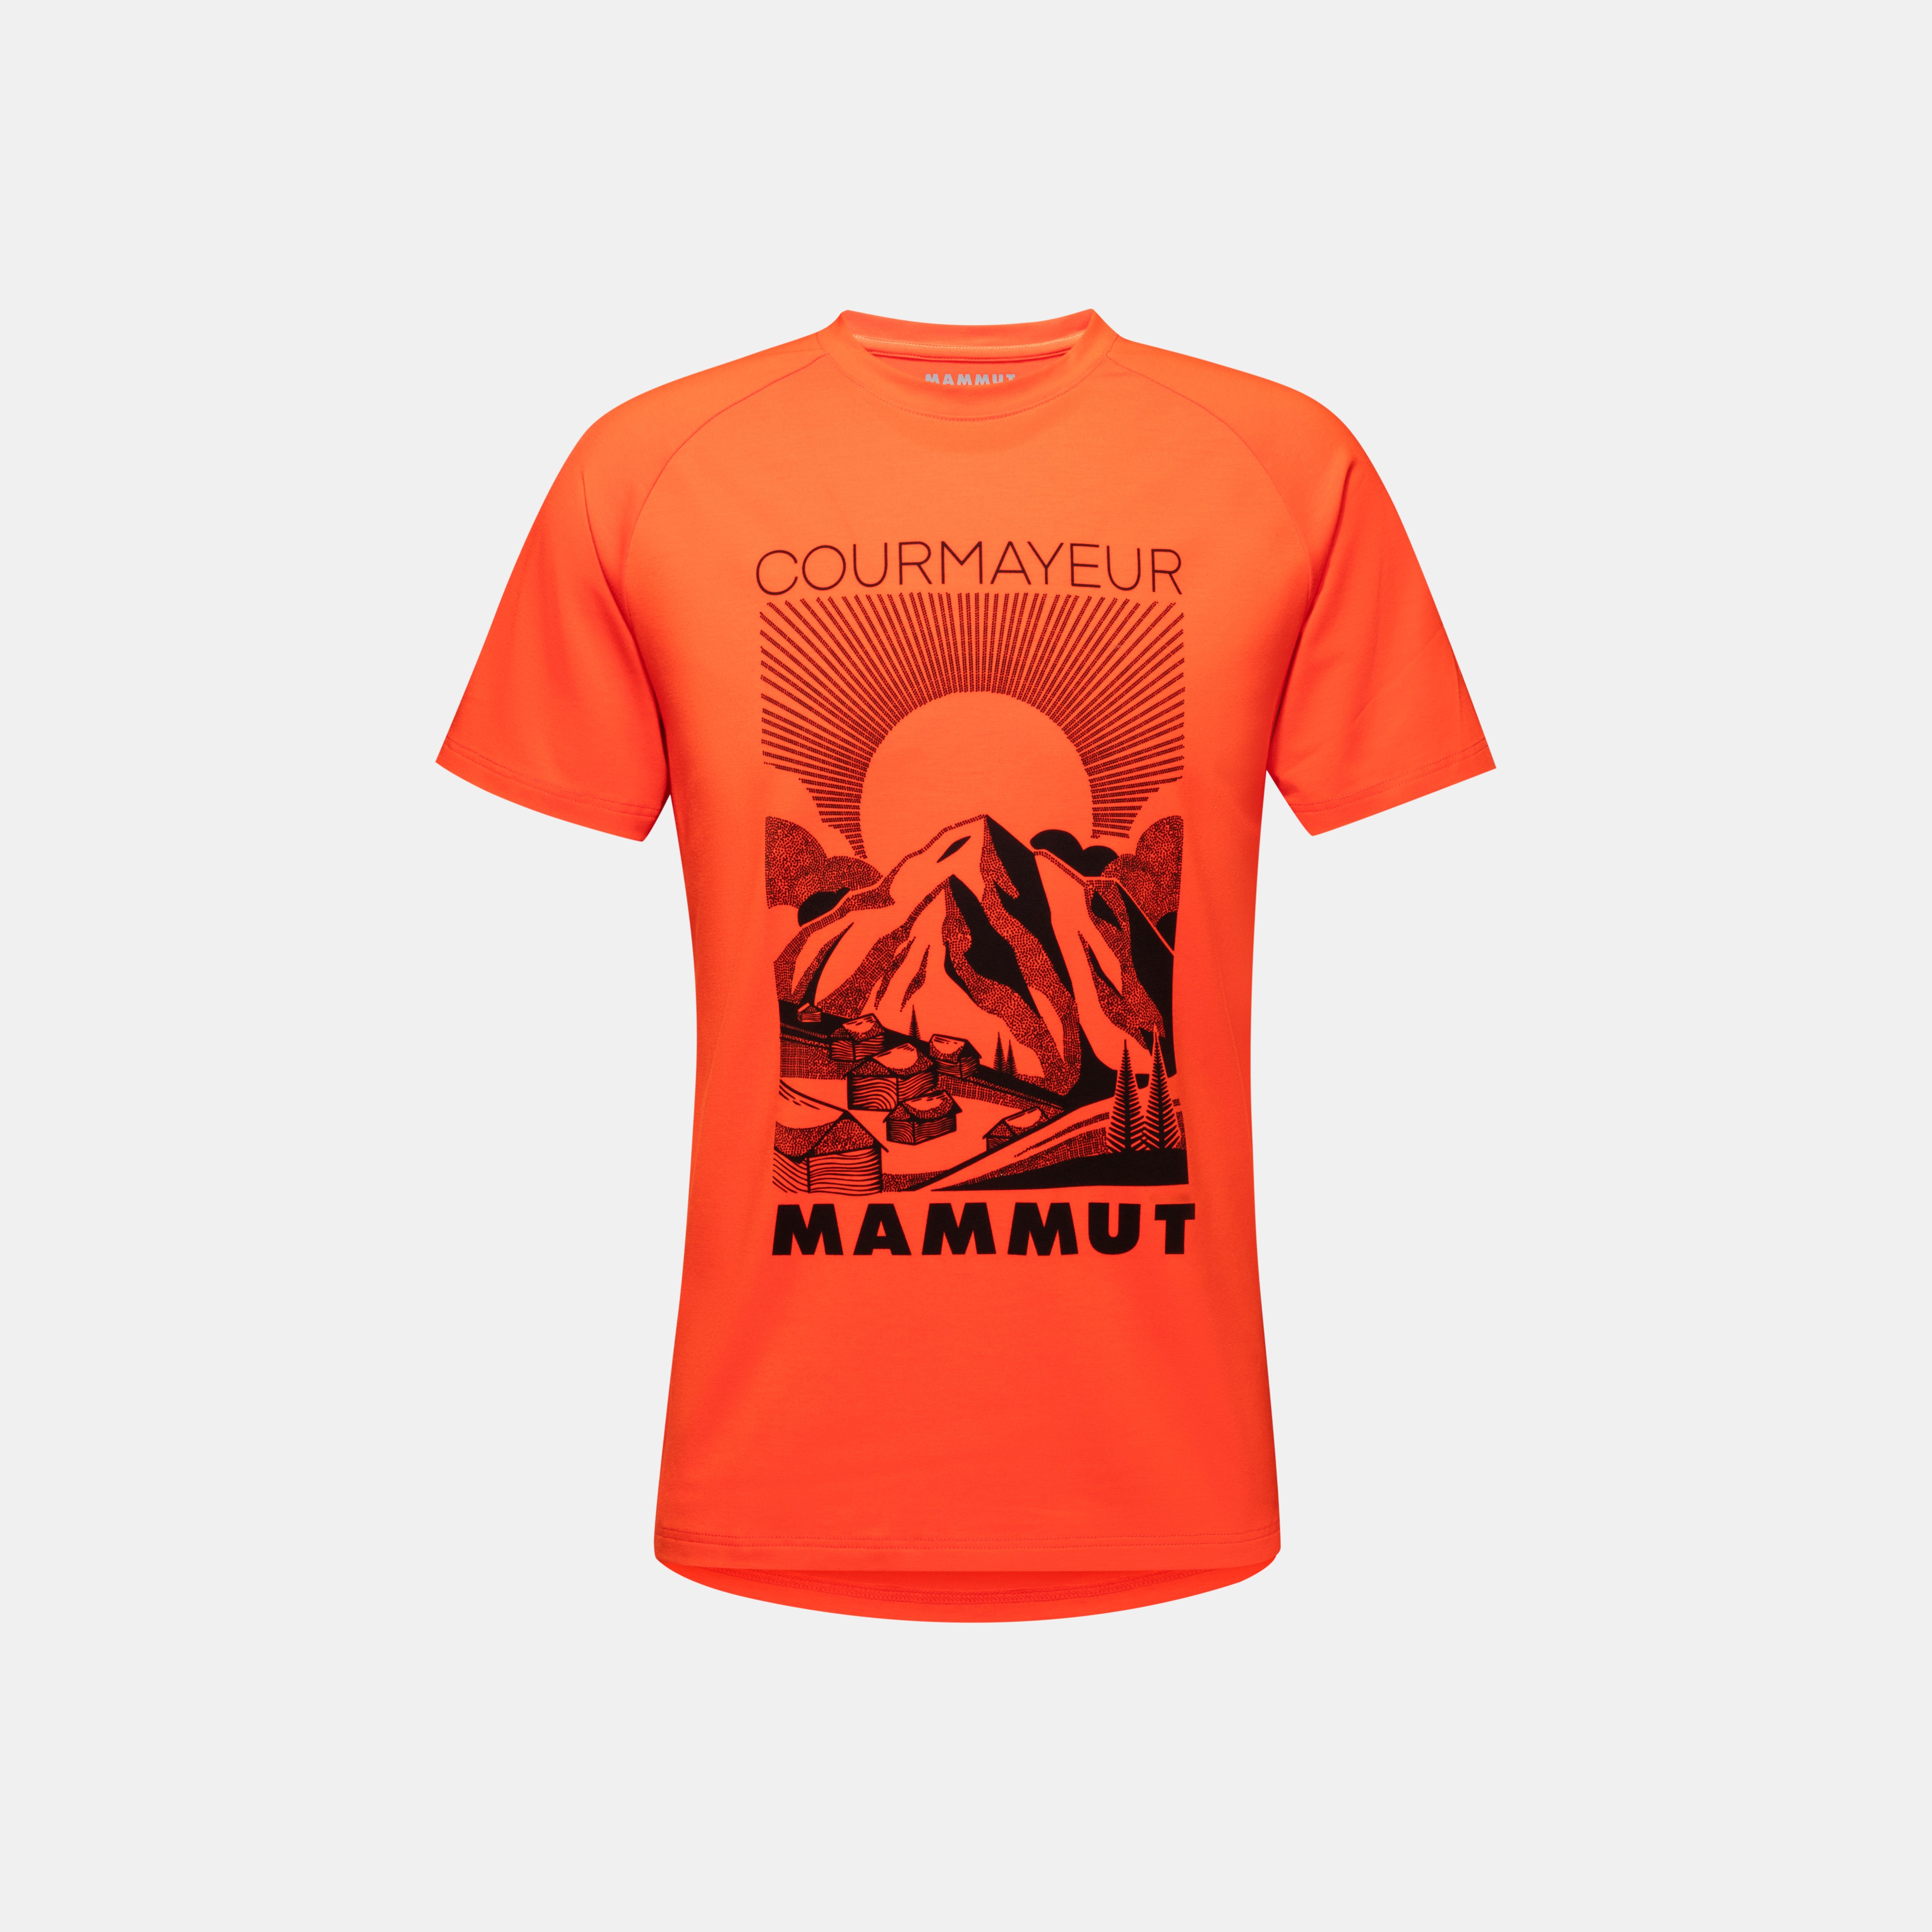 Mammut t shirt - Die Auswahl unter der Vielzahl an verglichenenMammut t shirt!